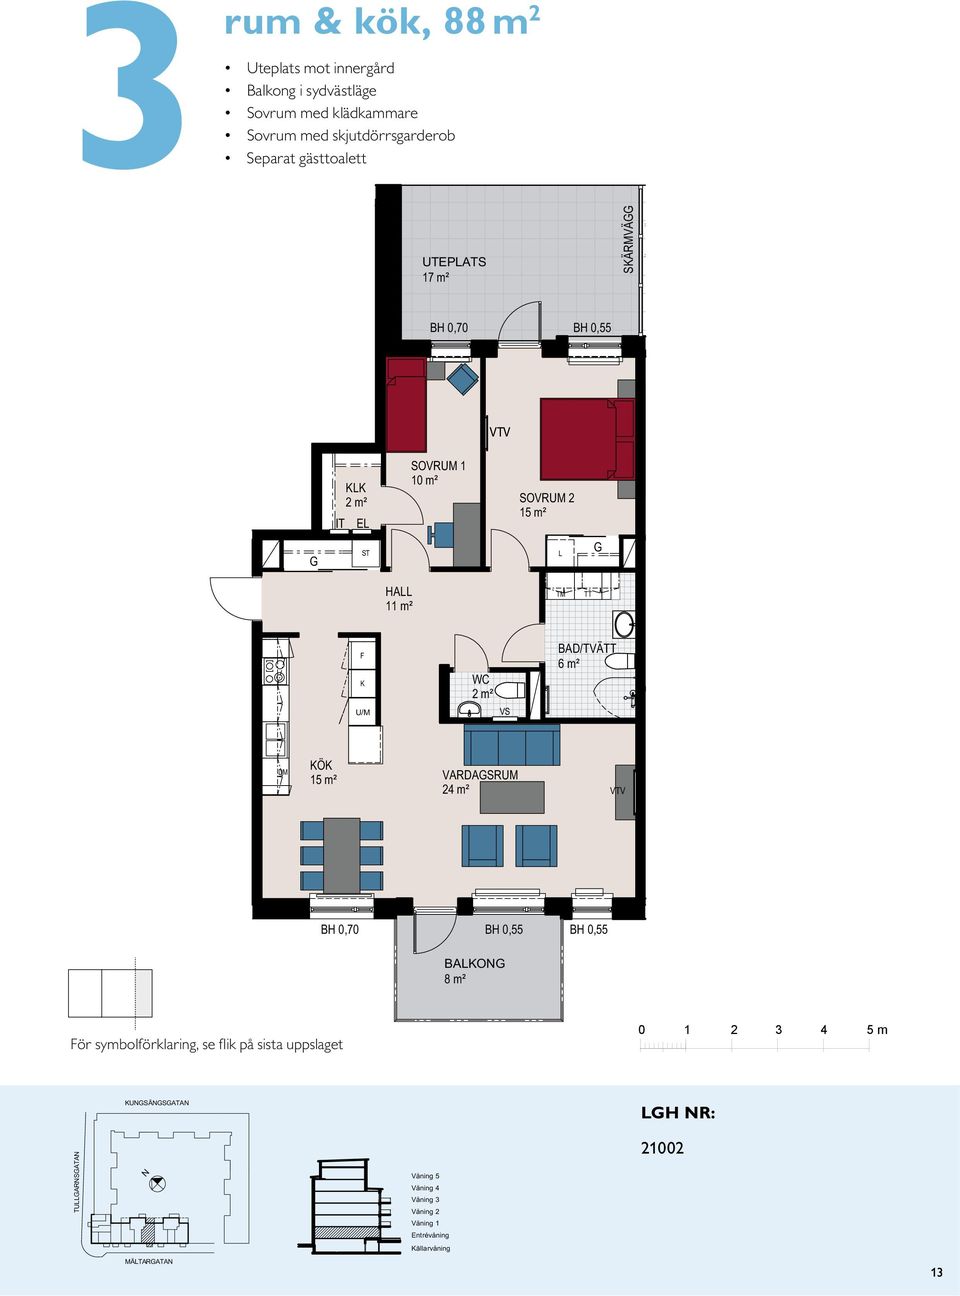 / ² 10 m² 2 m² IT E VVS 11 m² 2 m² VS /TVÄ 6 m² VARDASRUM 24 m² BÄ 8 m² ör